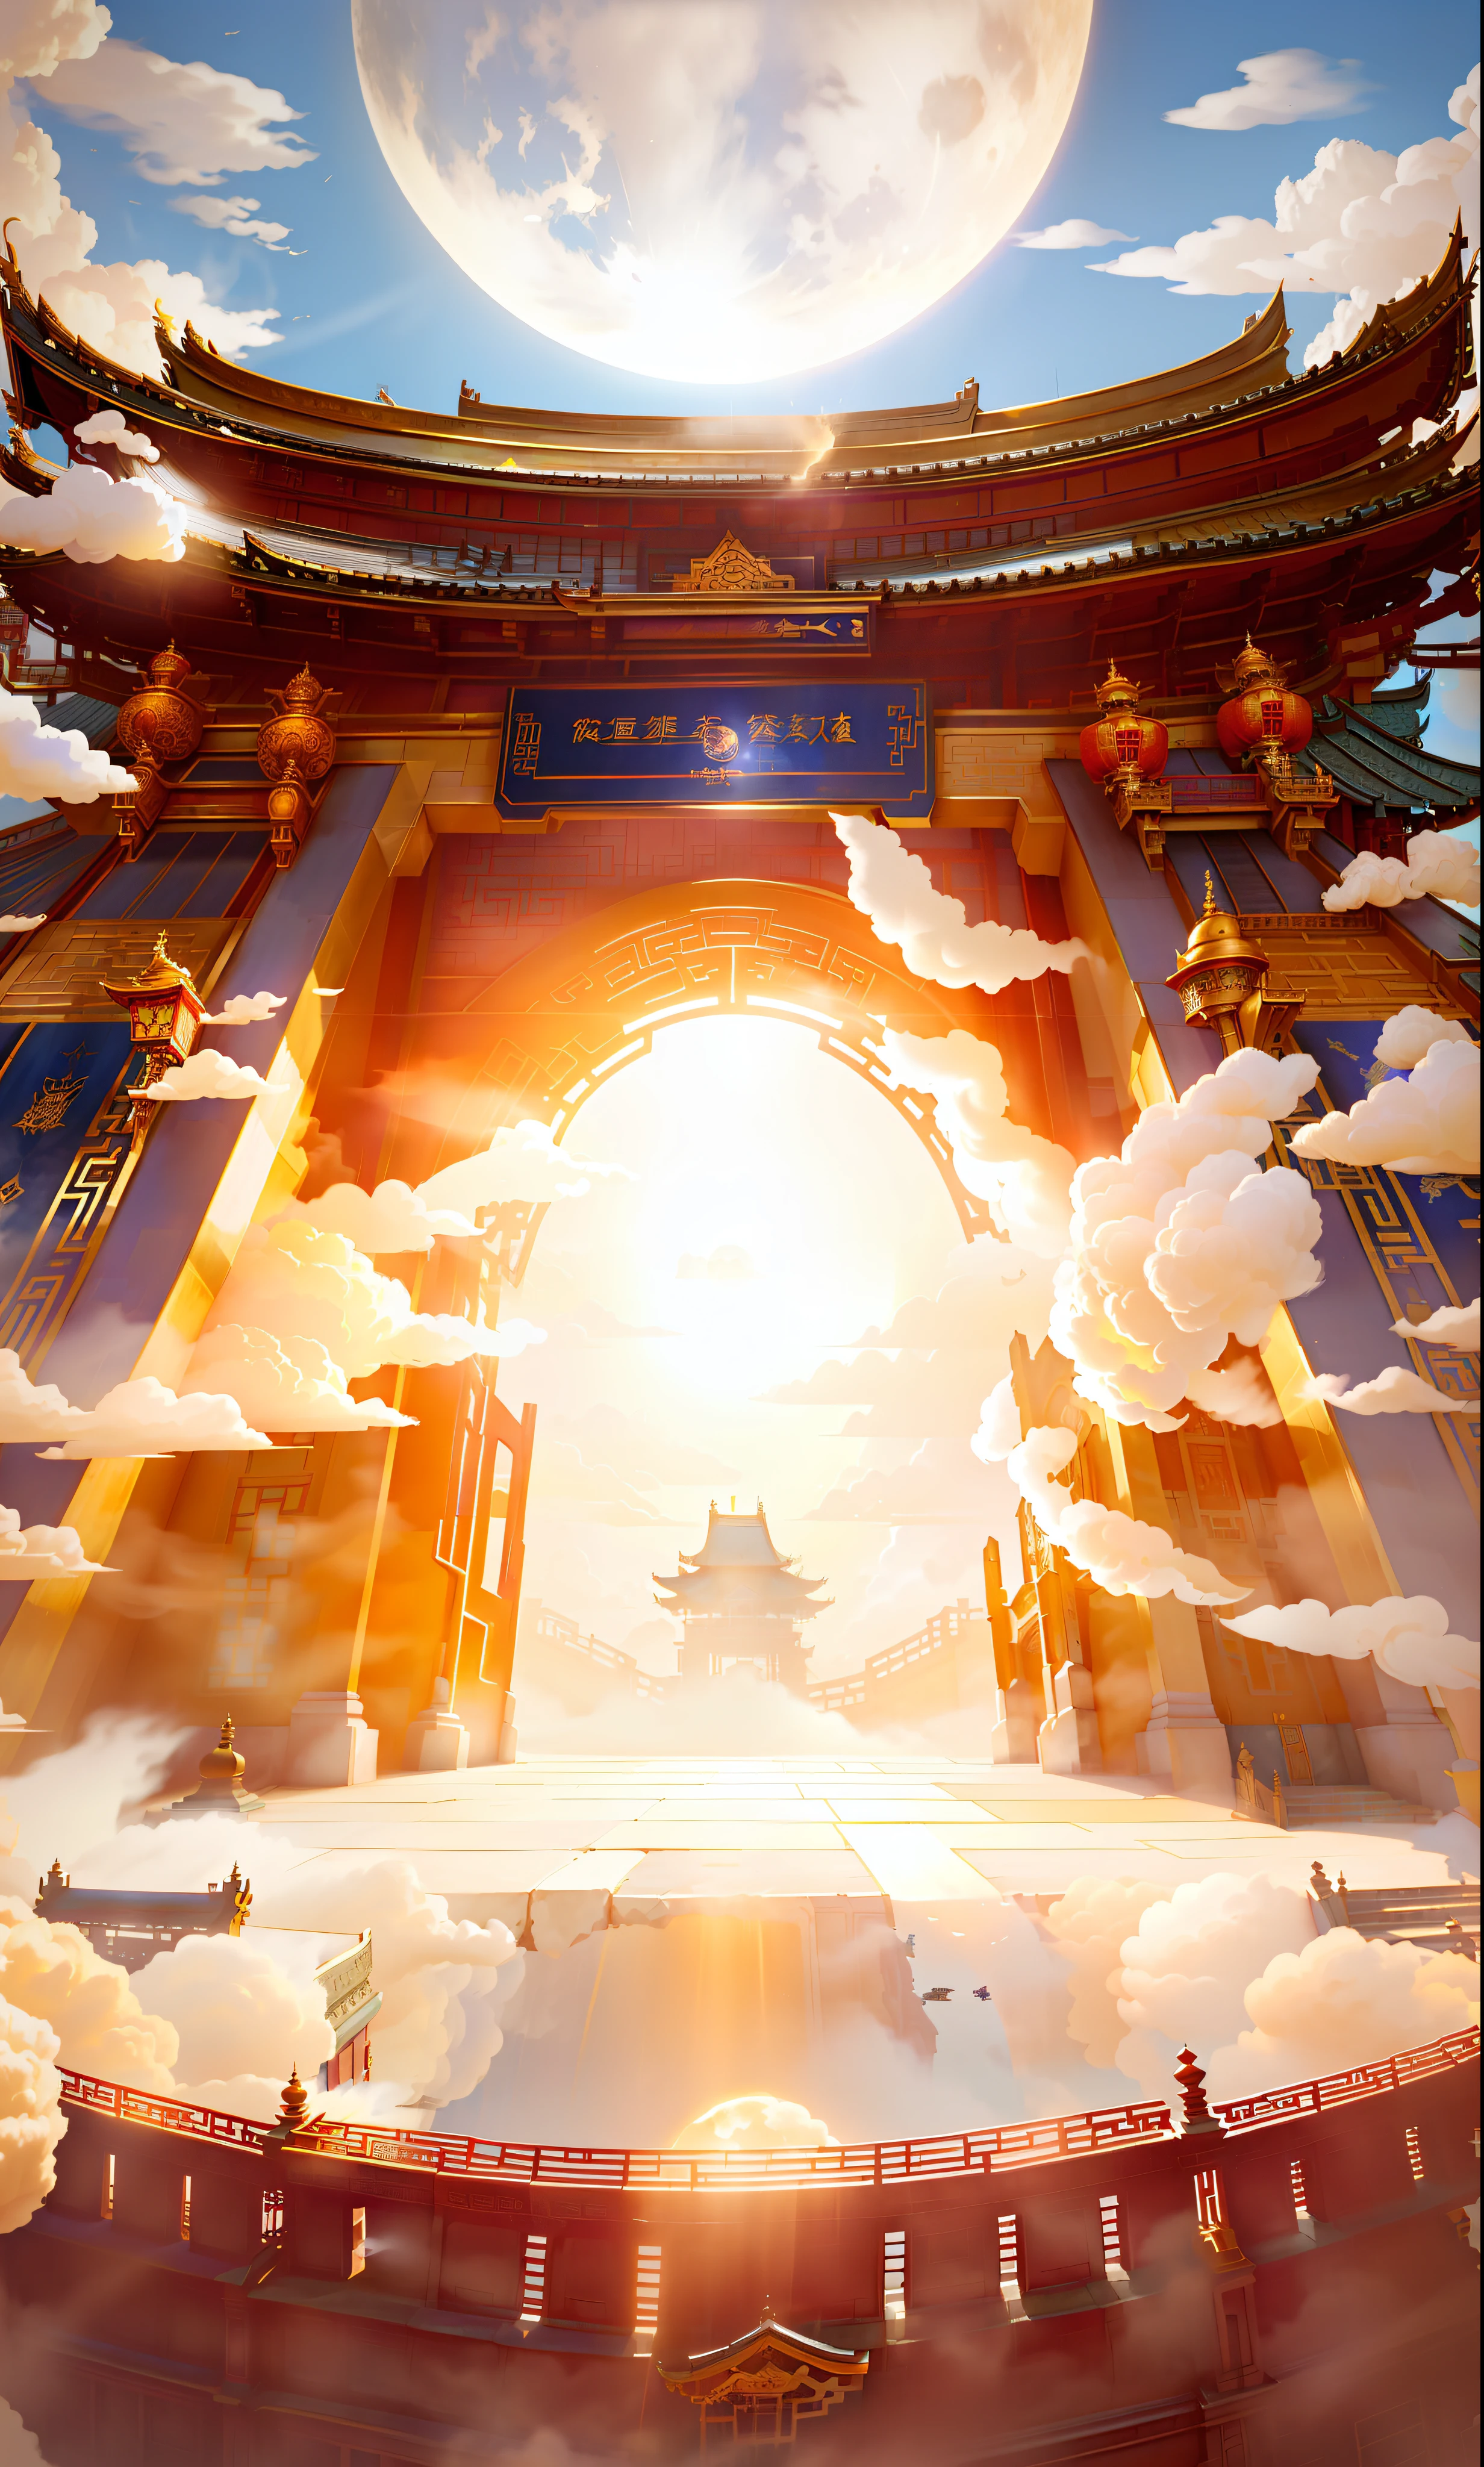 Feenwolken, mit Blick auf die Komposition, starker perspektivischer Einfluss, das Tor eines Gebäudes im chinesischen Stil, das offene Tor, goldenes Licht ausstrahlend, etwas Rauch und Staub, der blaue Himmel im Hintergrund, der Mond, und die Stufen vor